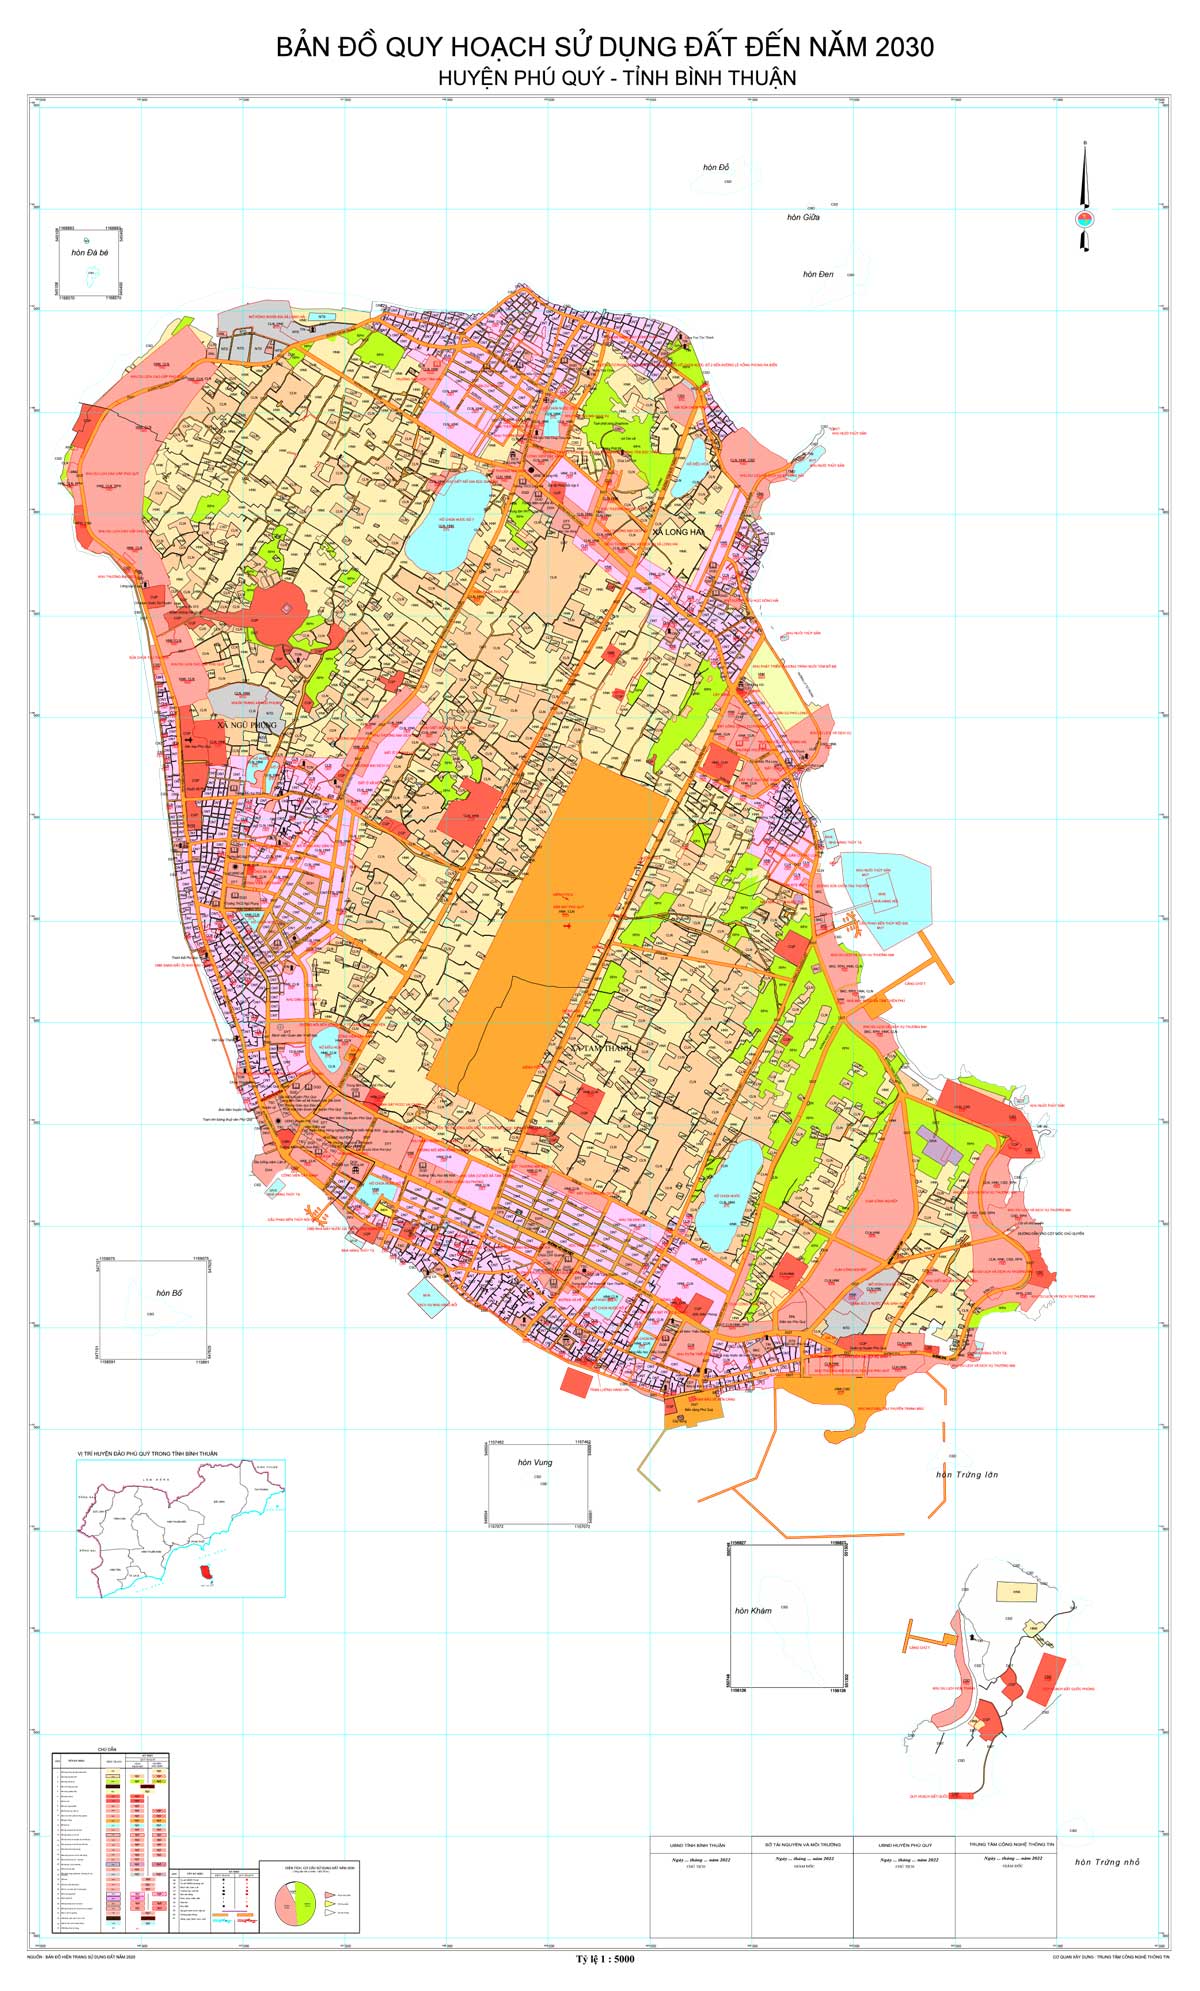 Bản đồ QHSDĐ huyện Phú Quý đến năm 2030 (đã duyệt)